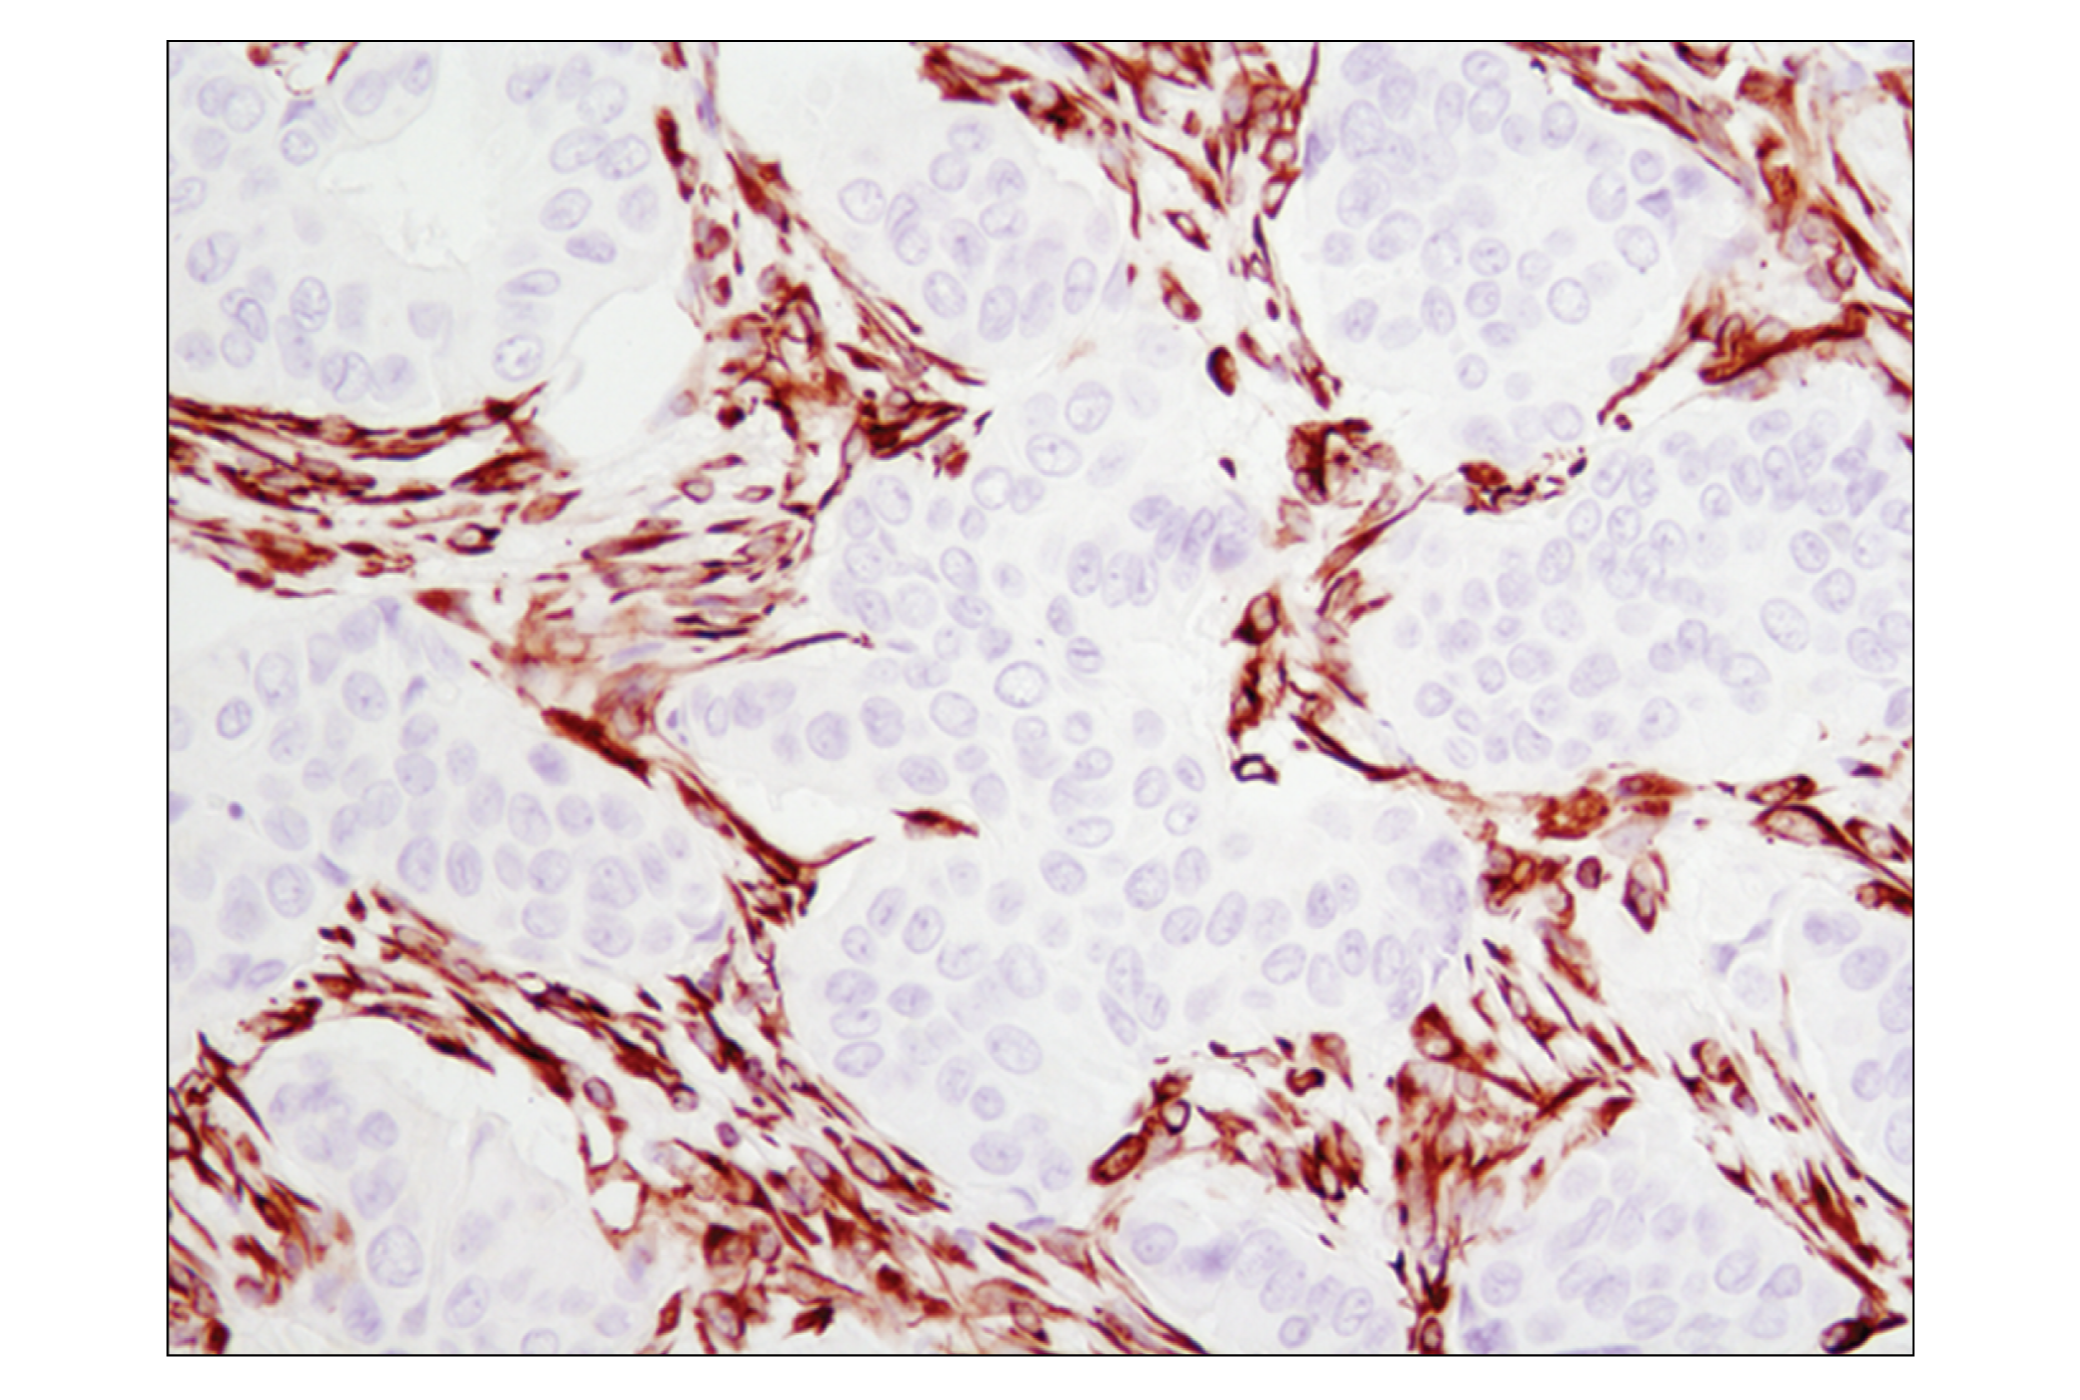  Image 31: Cell Fractionation Antibody Sampler Kit